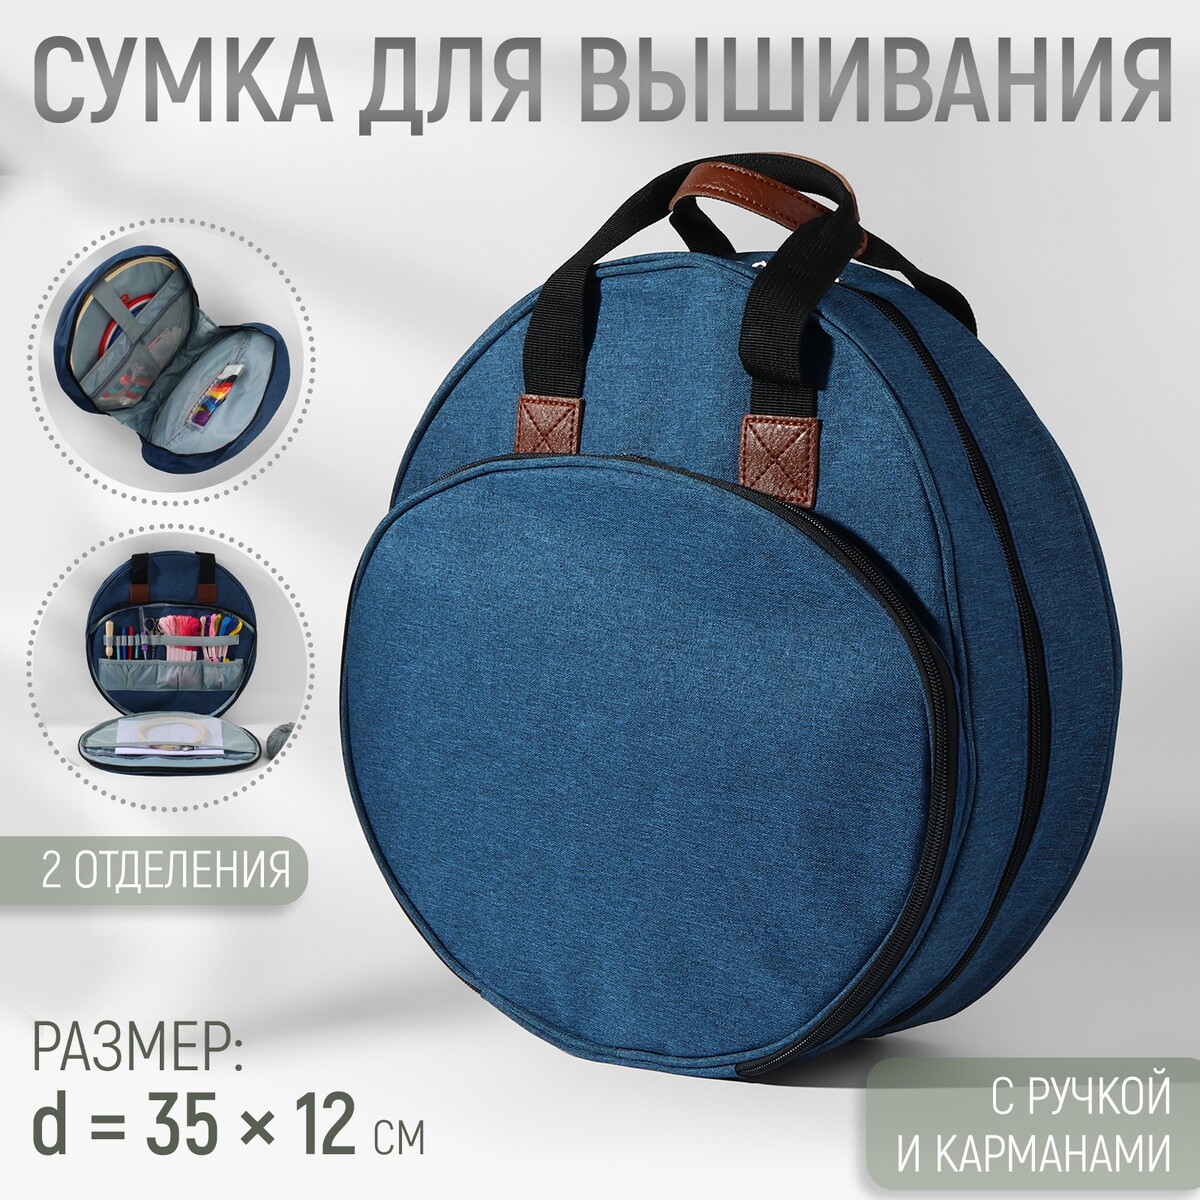 Сумка для вышивания, 2 отделения на молнии, с ручками, d = 35 × 12 см, цвет синий пакет сумка 38х42 см 100 мкм с ламинированными ручками 9246 9240